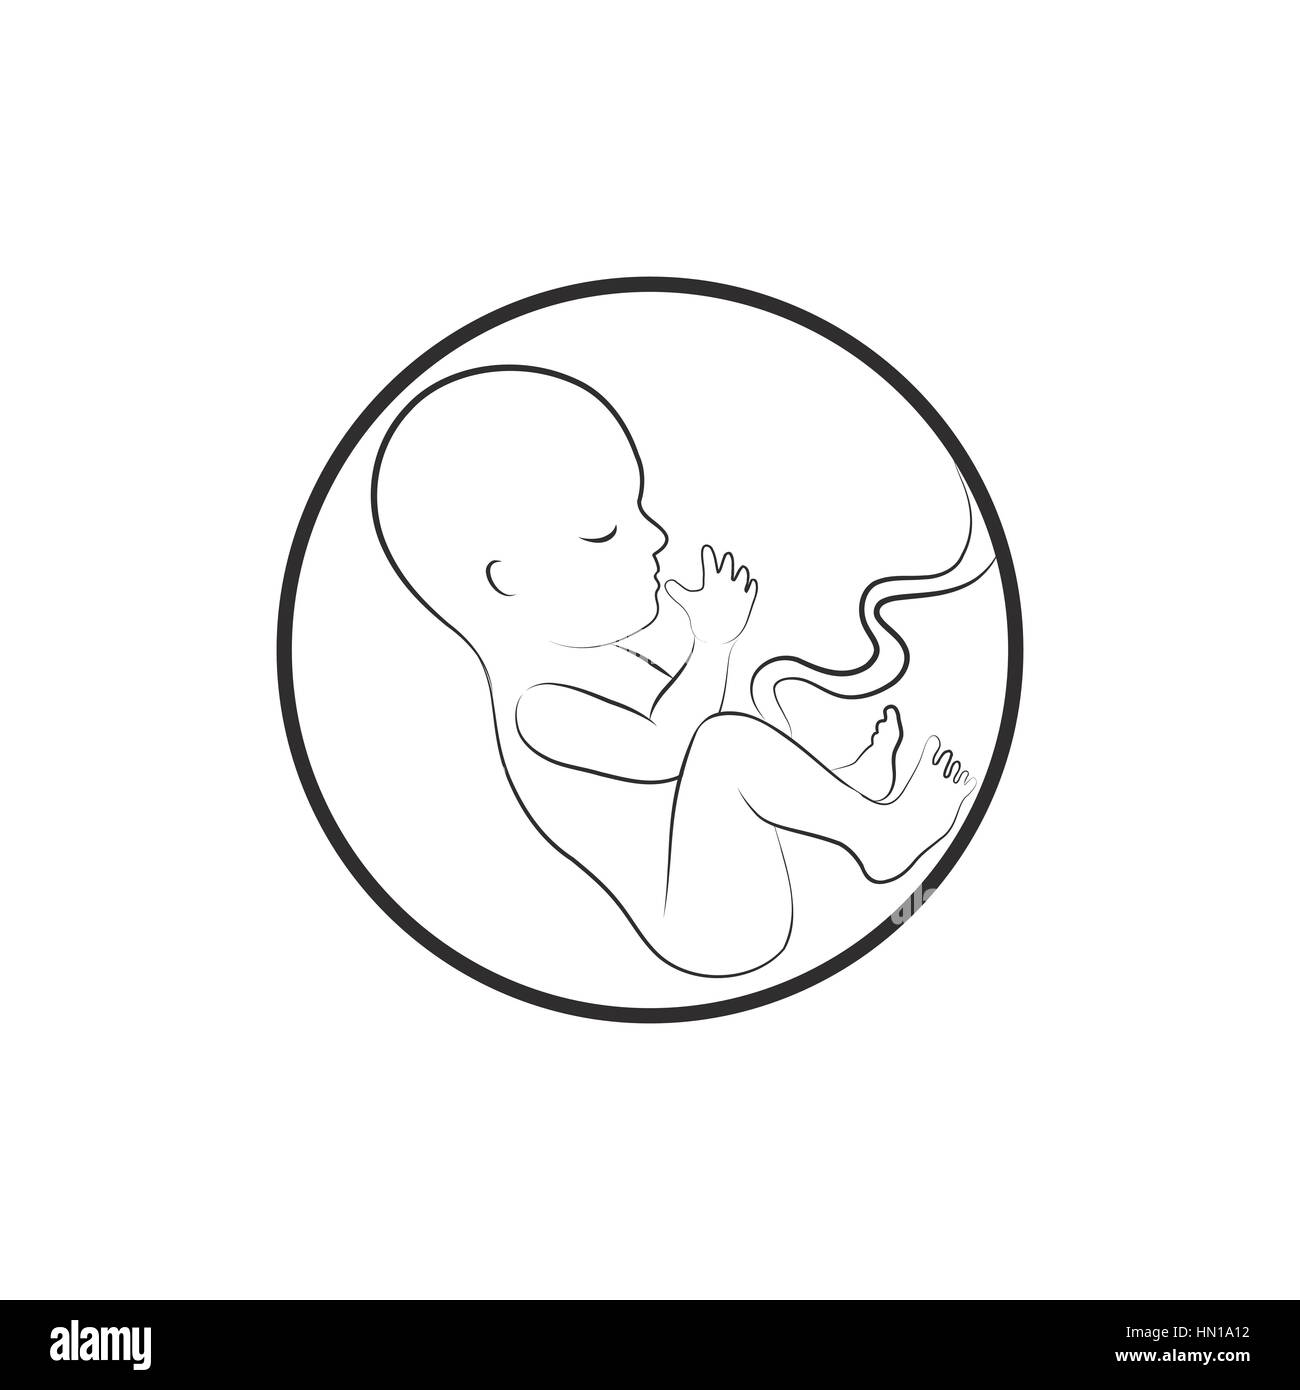 Fetus icon. Embryo sketch illustration Stock Vector